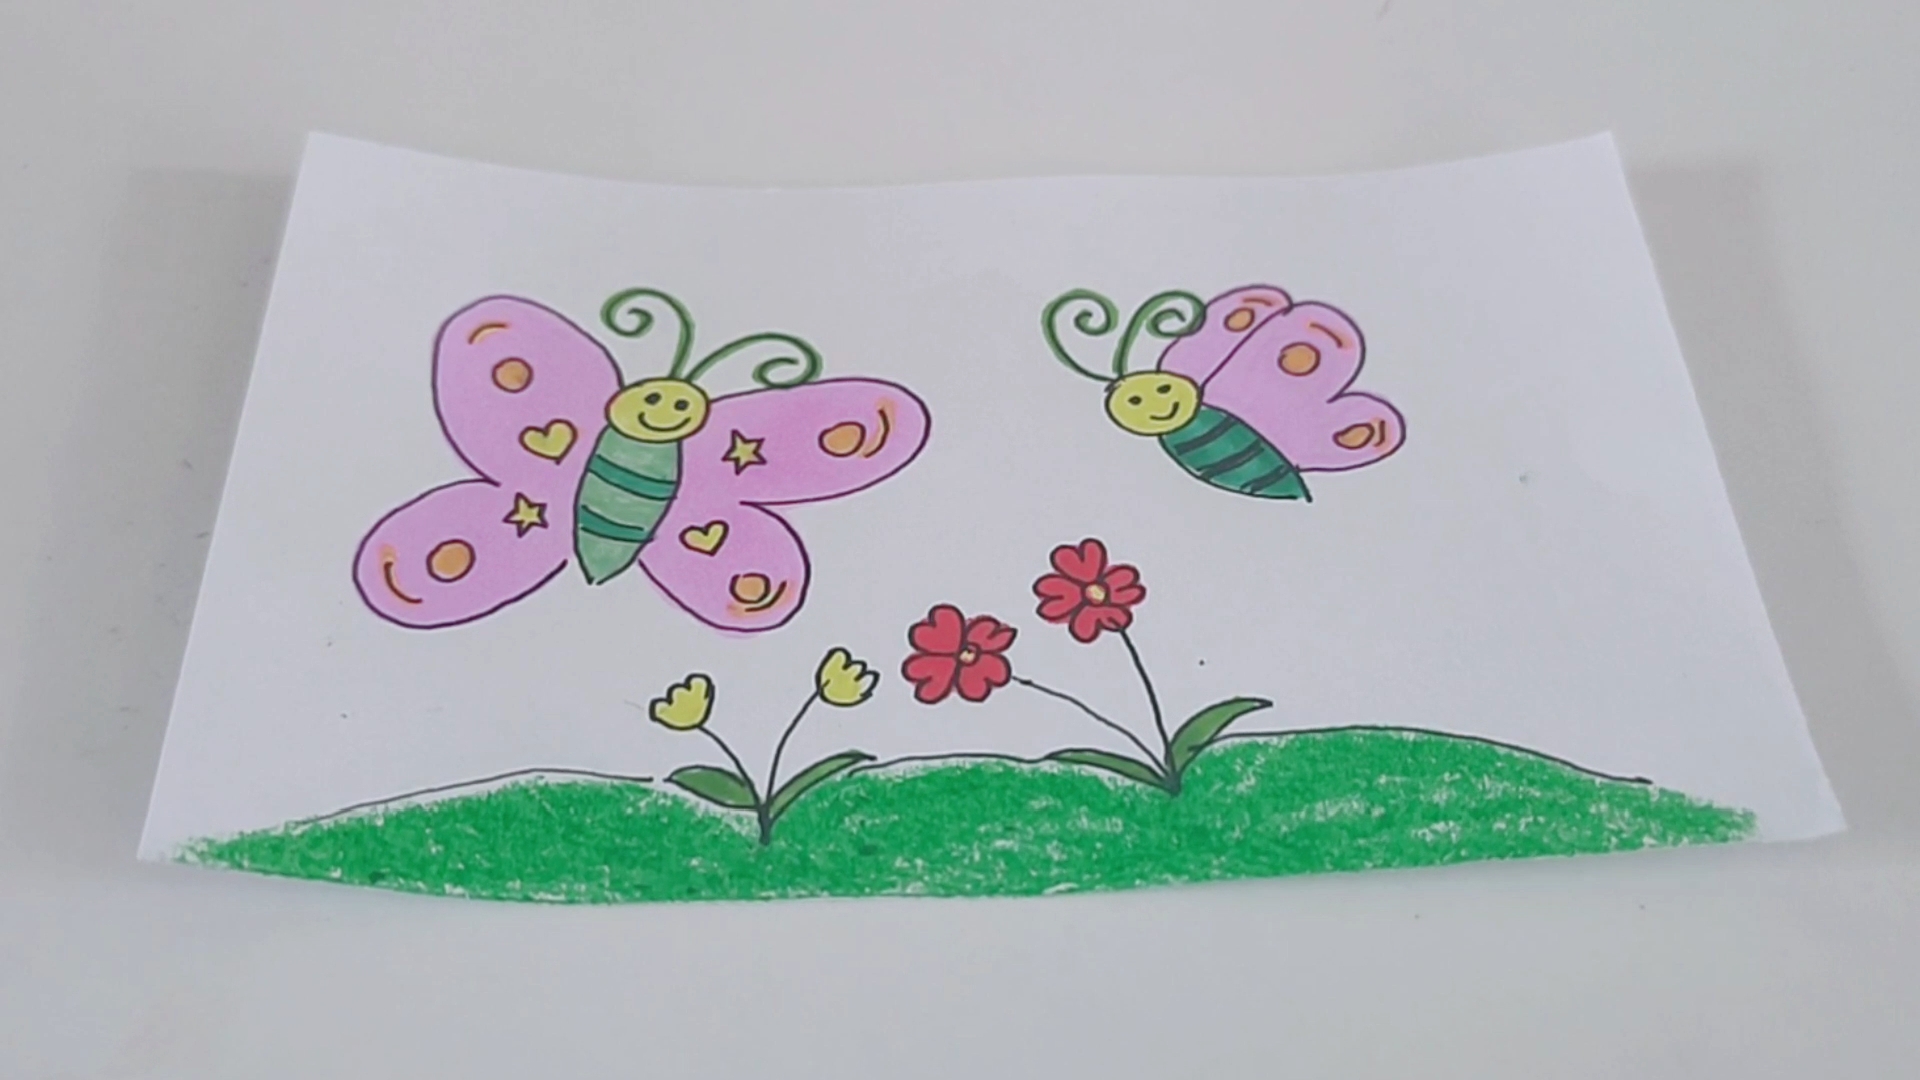 蝴蝶的简笔画采花图片